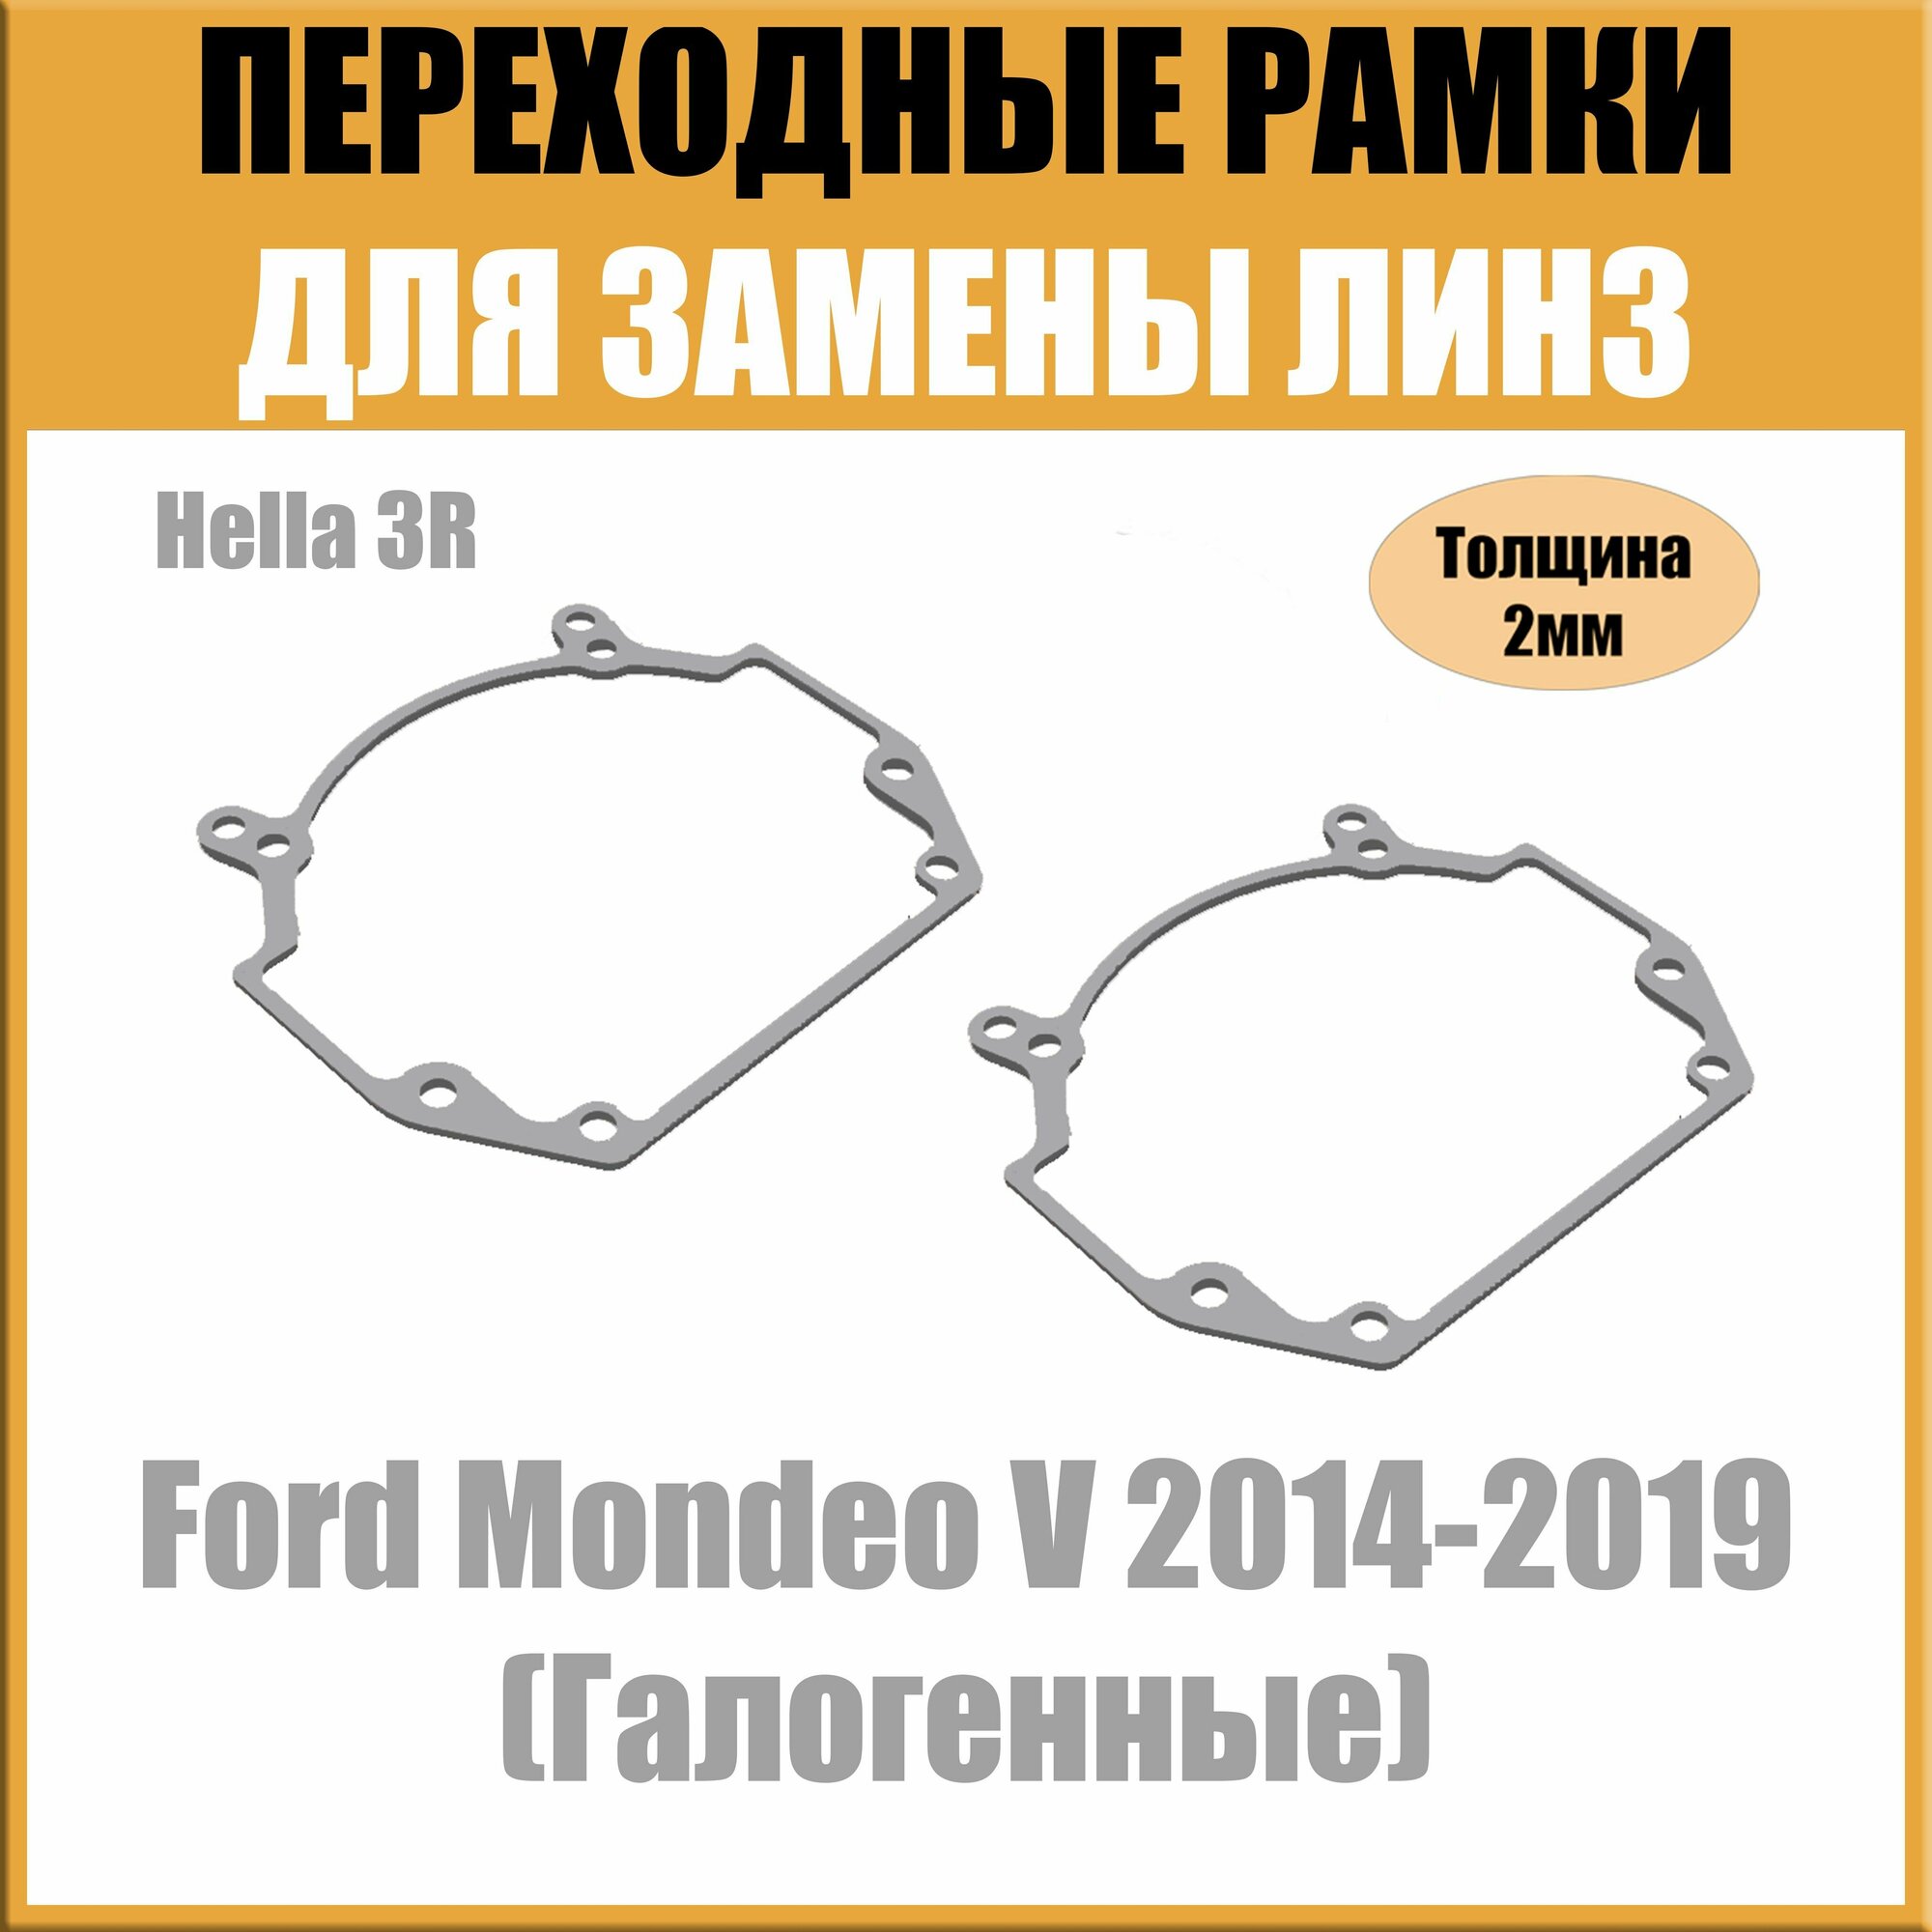 Переходные рамки для линз на Ford Mondeo V 2014-2019 (Галогенные) под модуль Hella 3R/Hella 5 (Комплект 2шт)